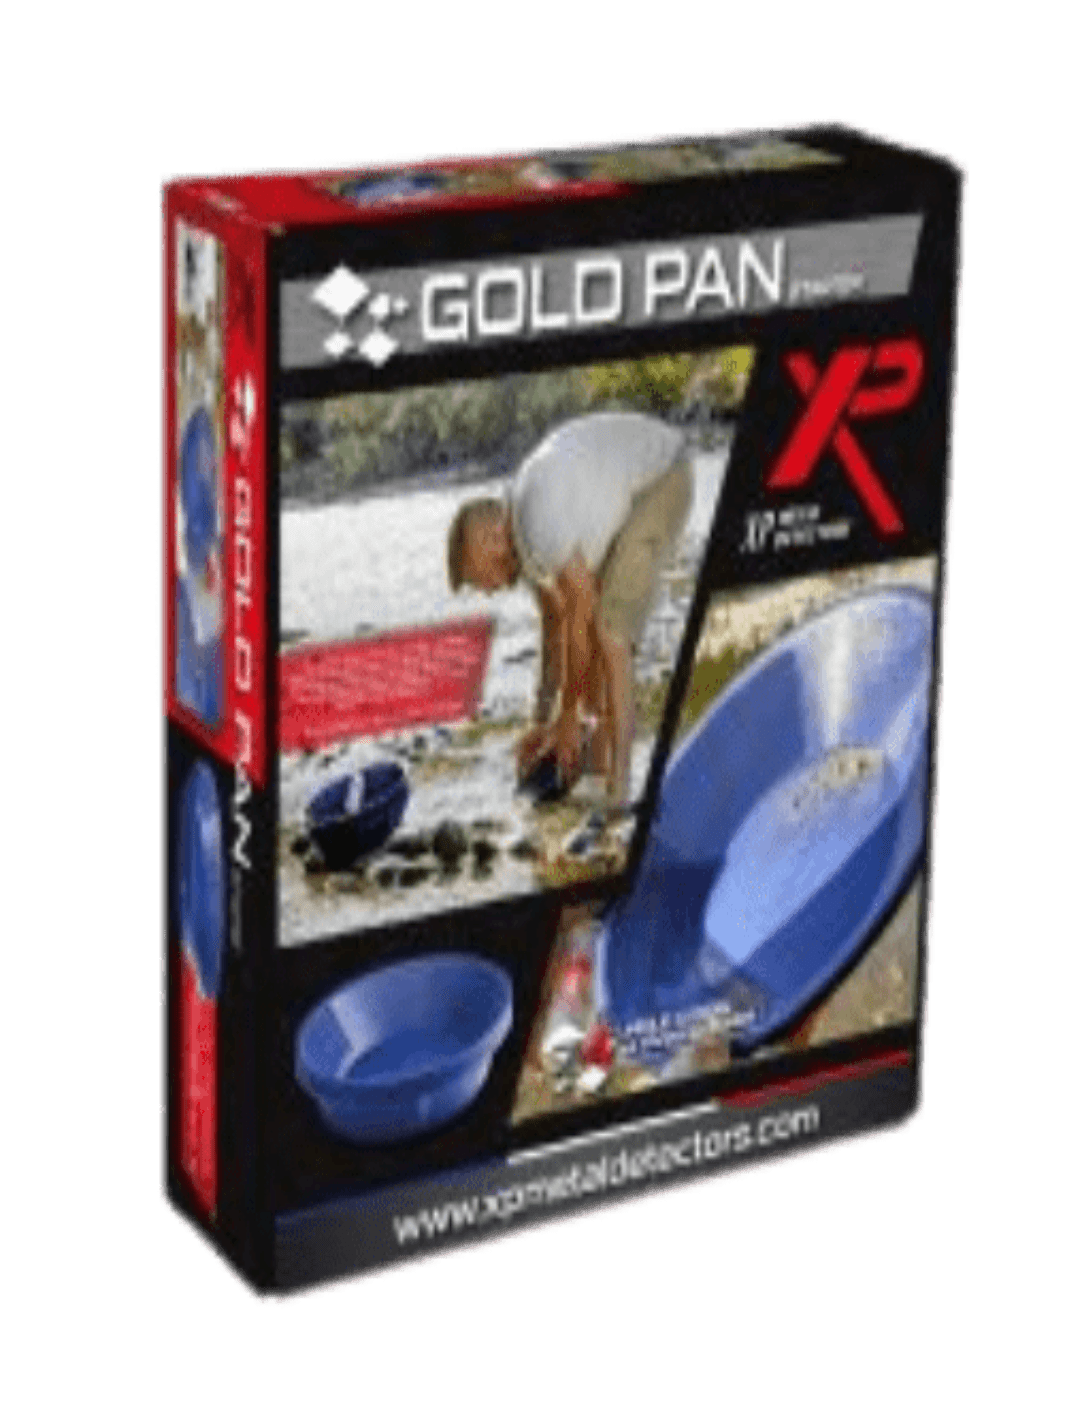 XP Gold Pan Starter Kit - Treasure Coast Metal Detectors